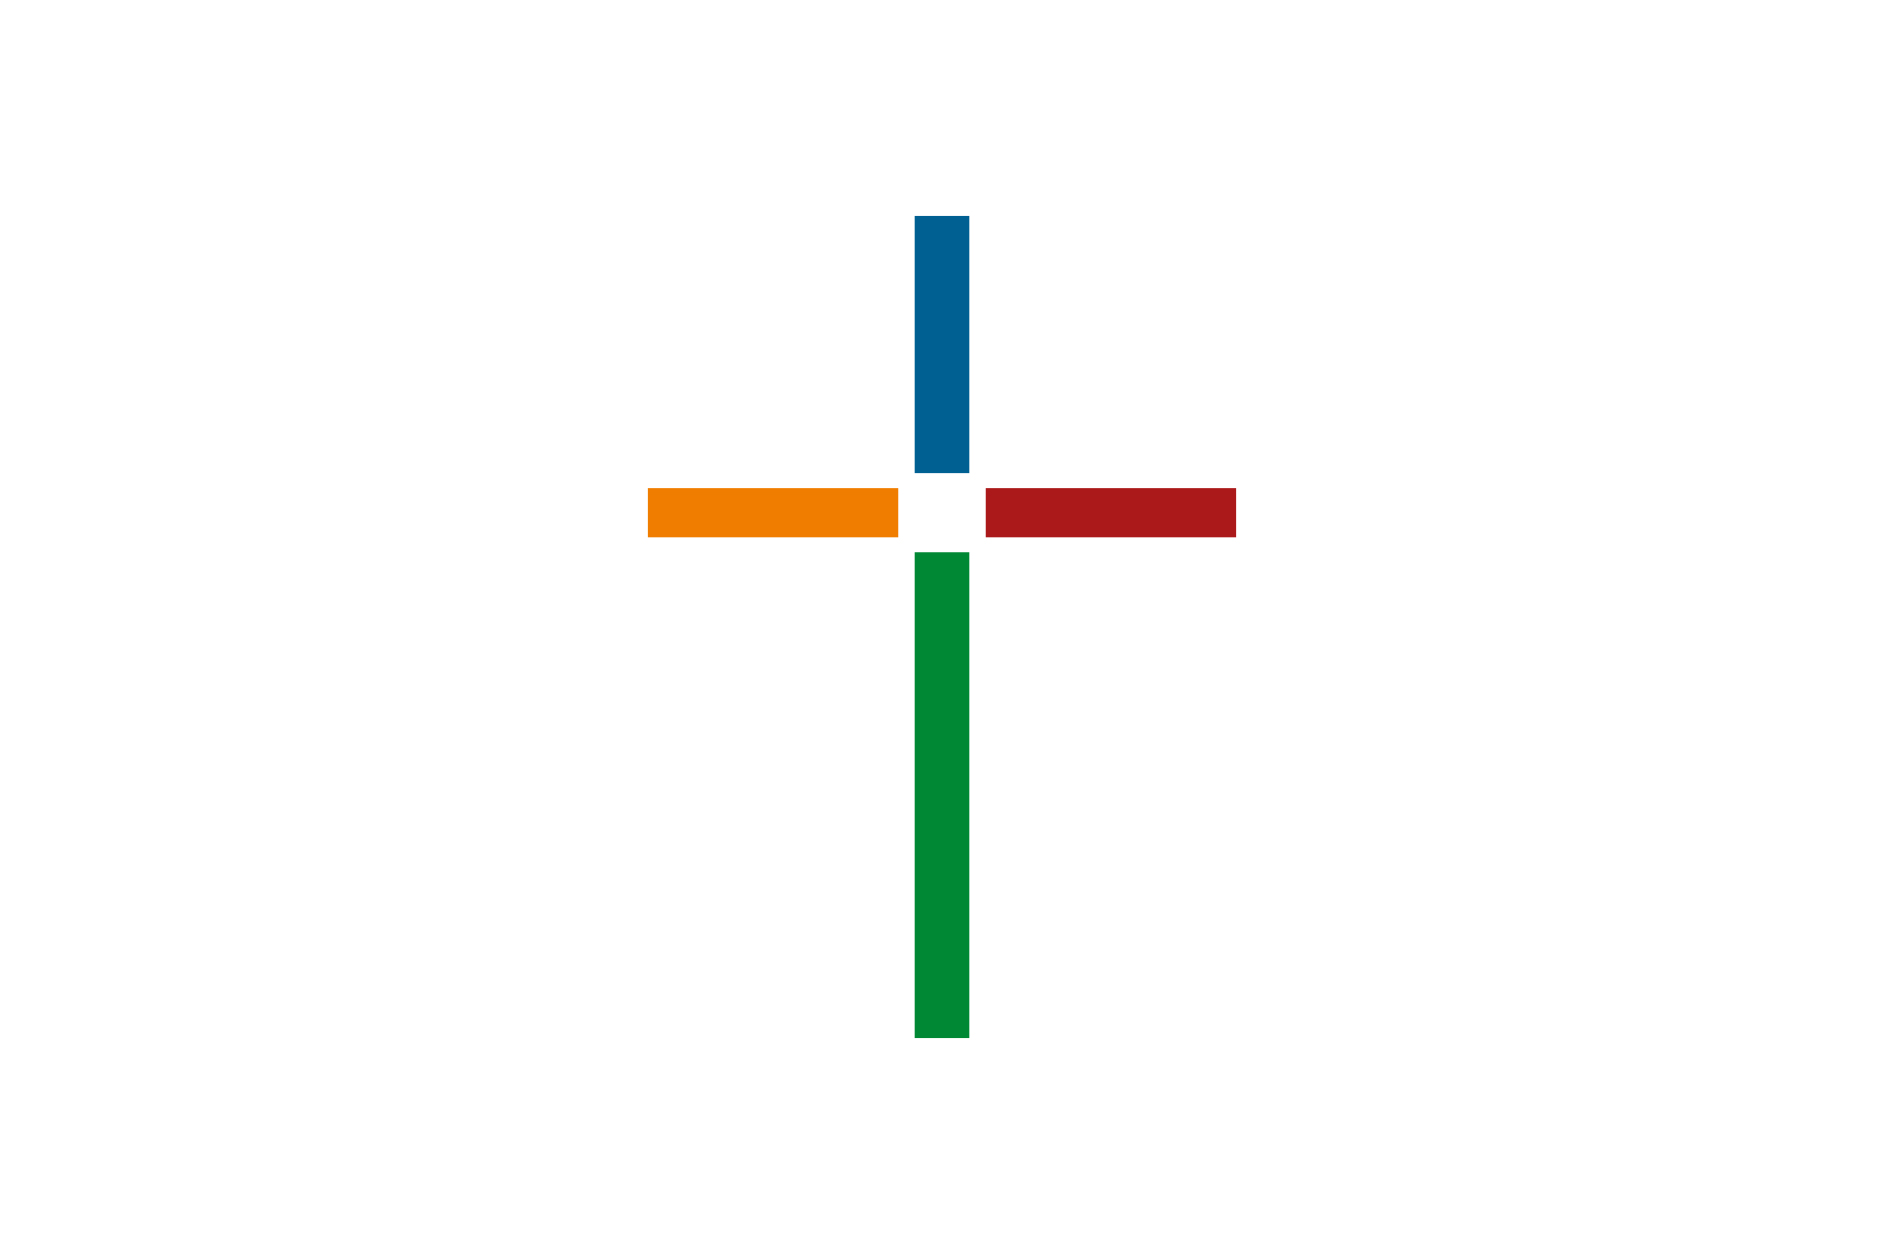 Evangelisch-reformierte Kirche Schweiz